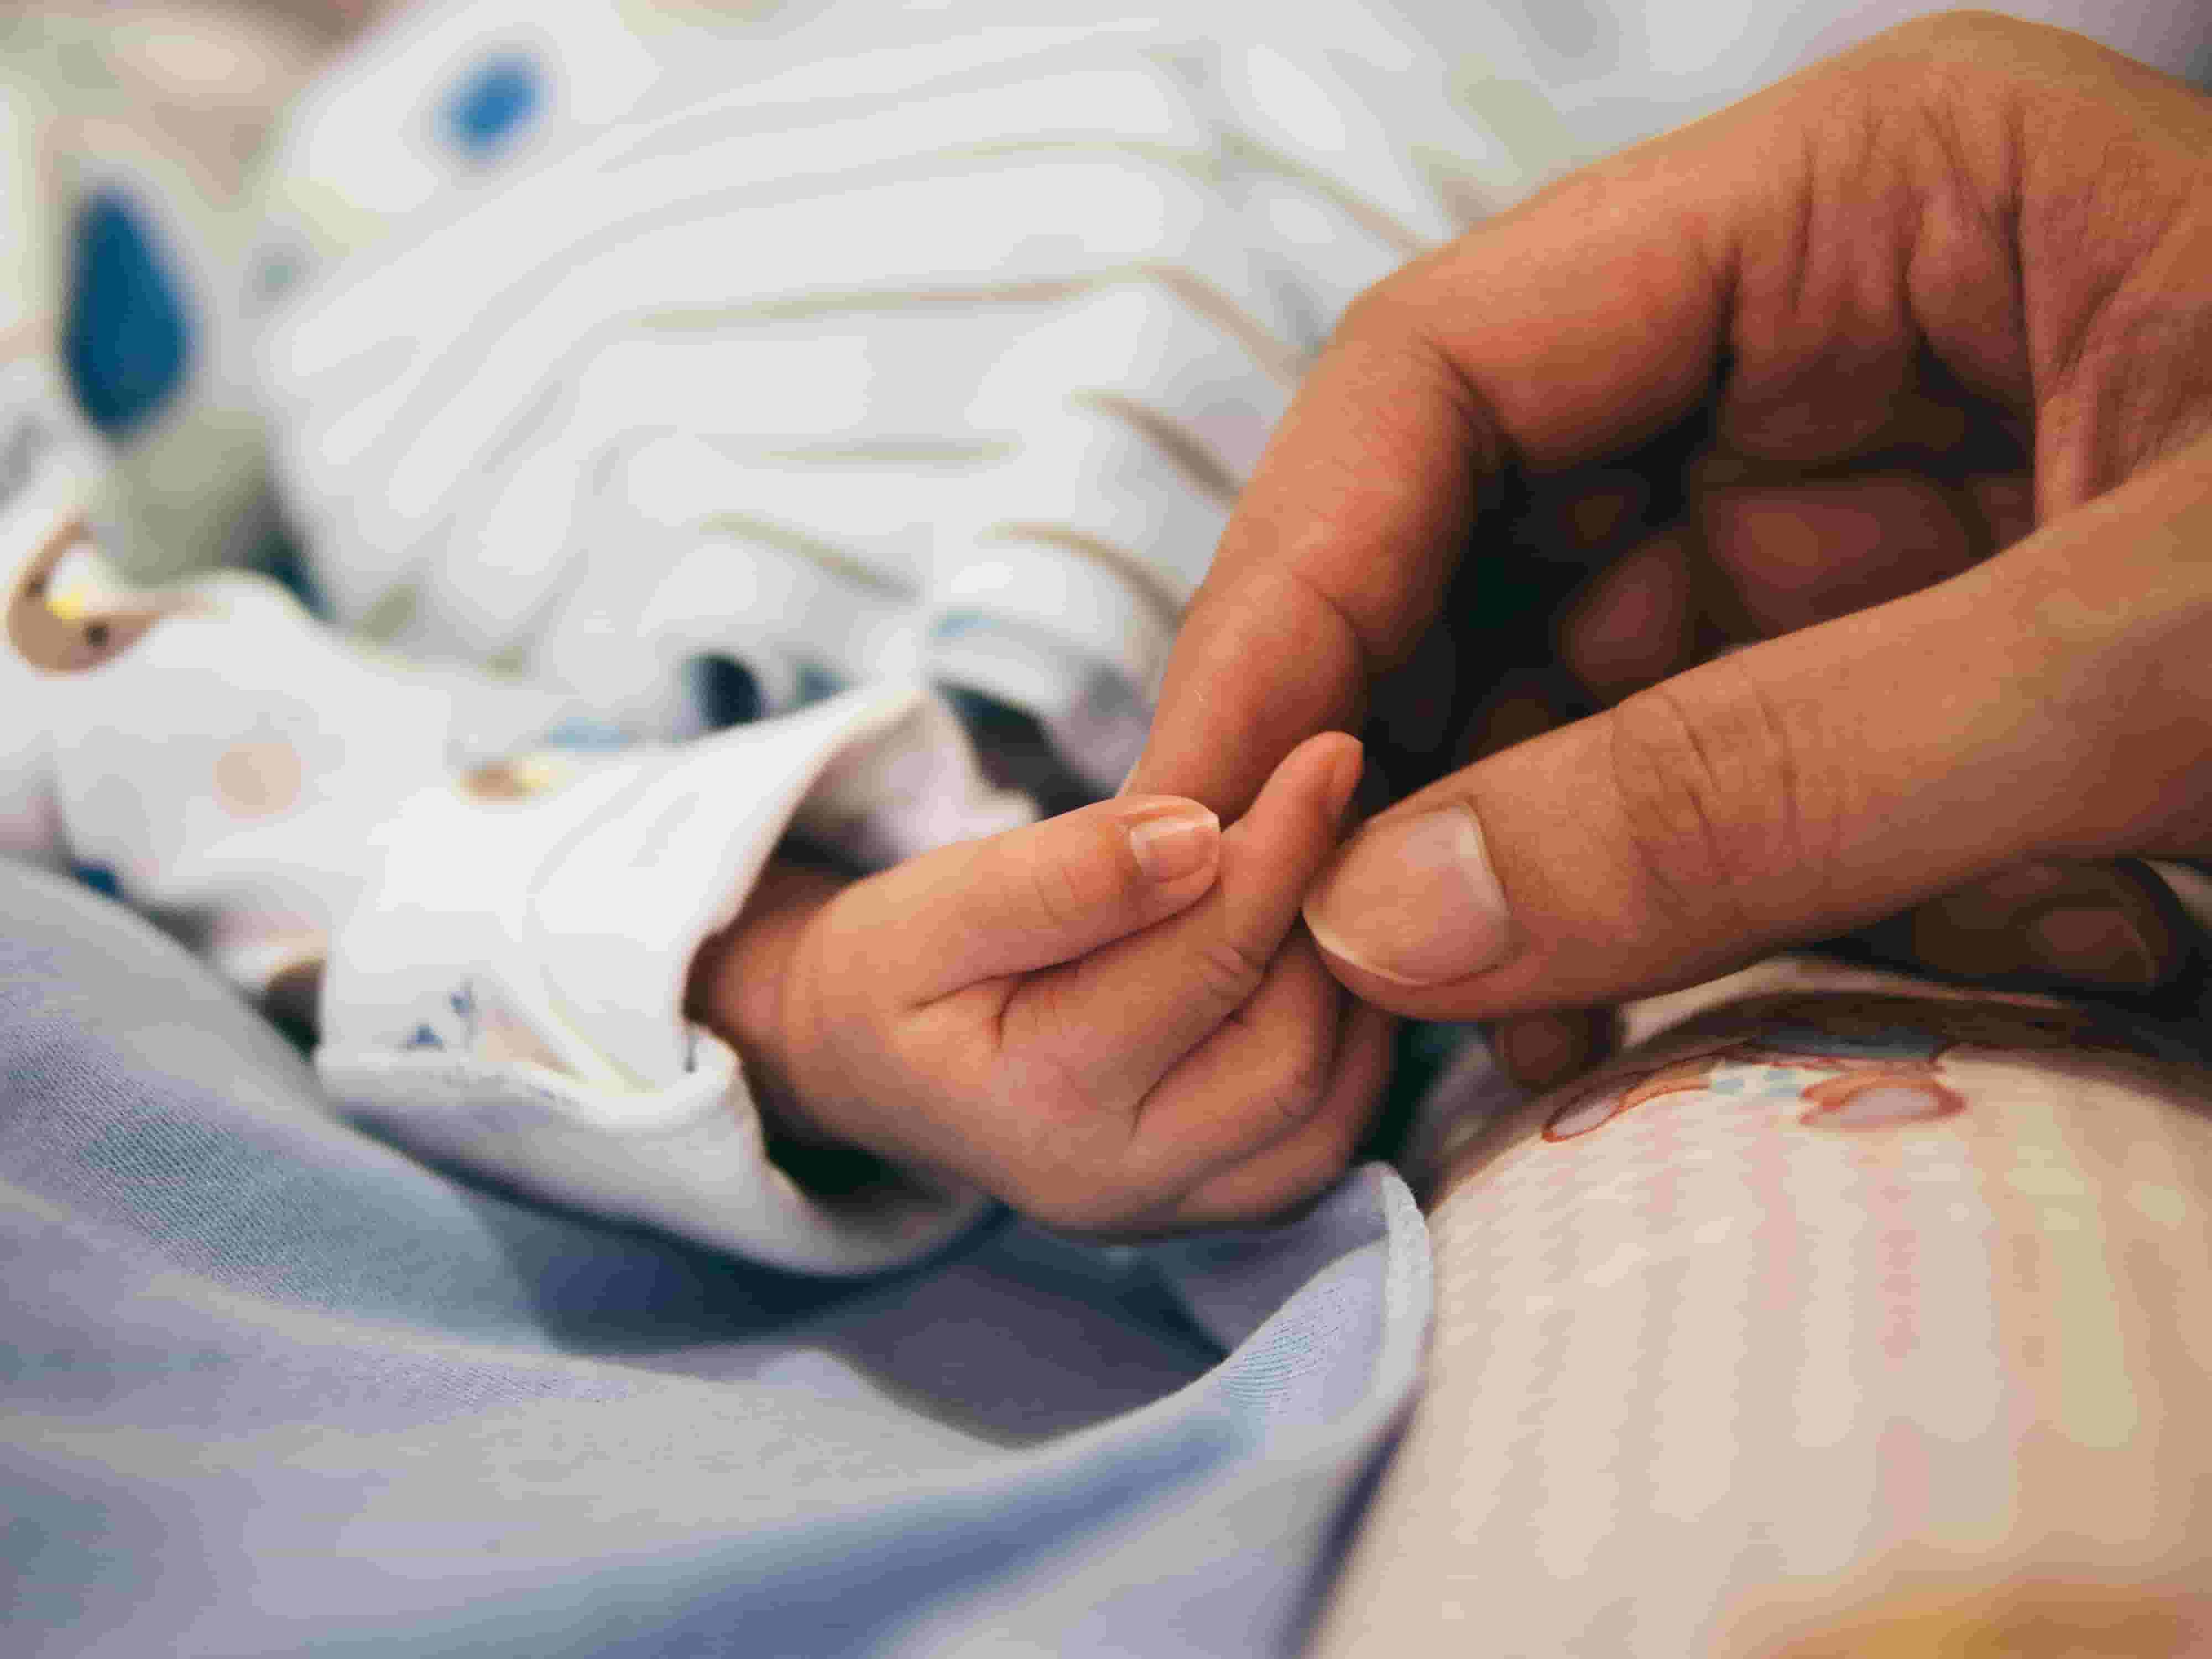 A mum holds her newborn baby's hand